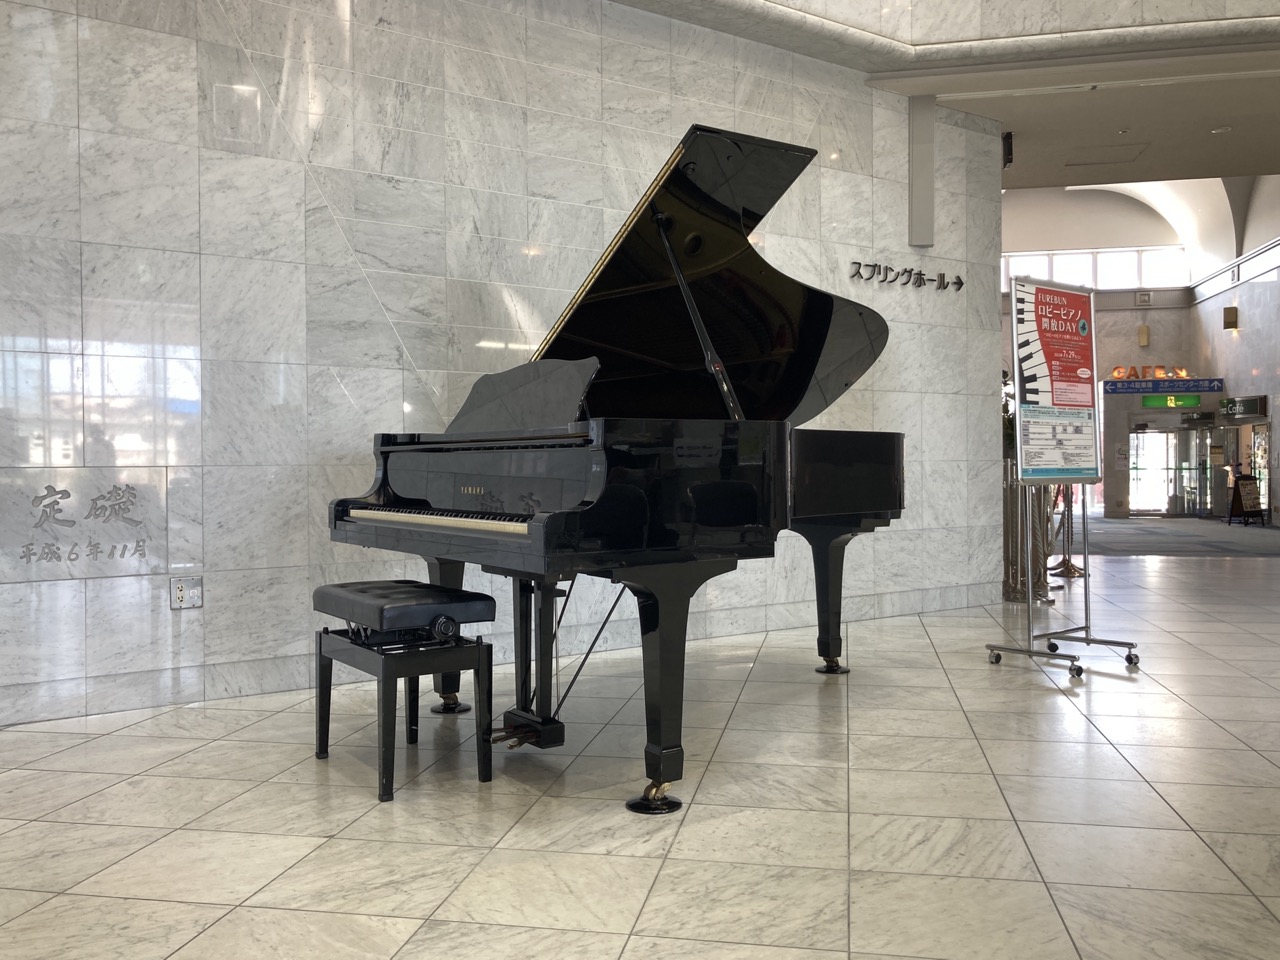 春日市ふれあい文化センターのエントランスロビーに置かれているグランドピアノ